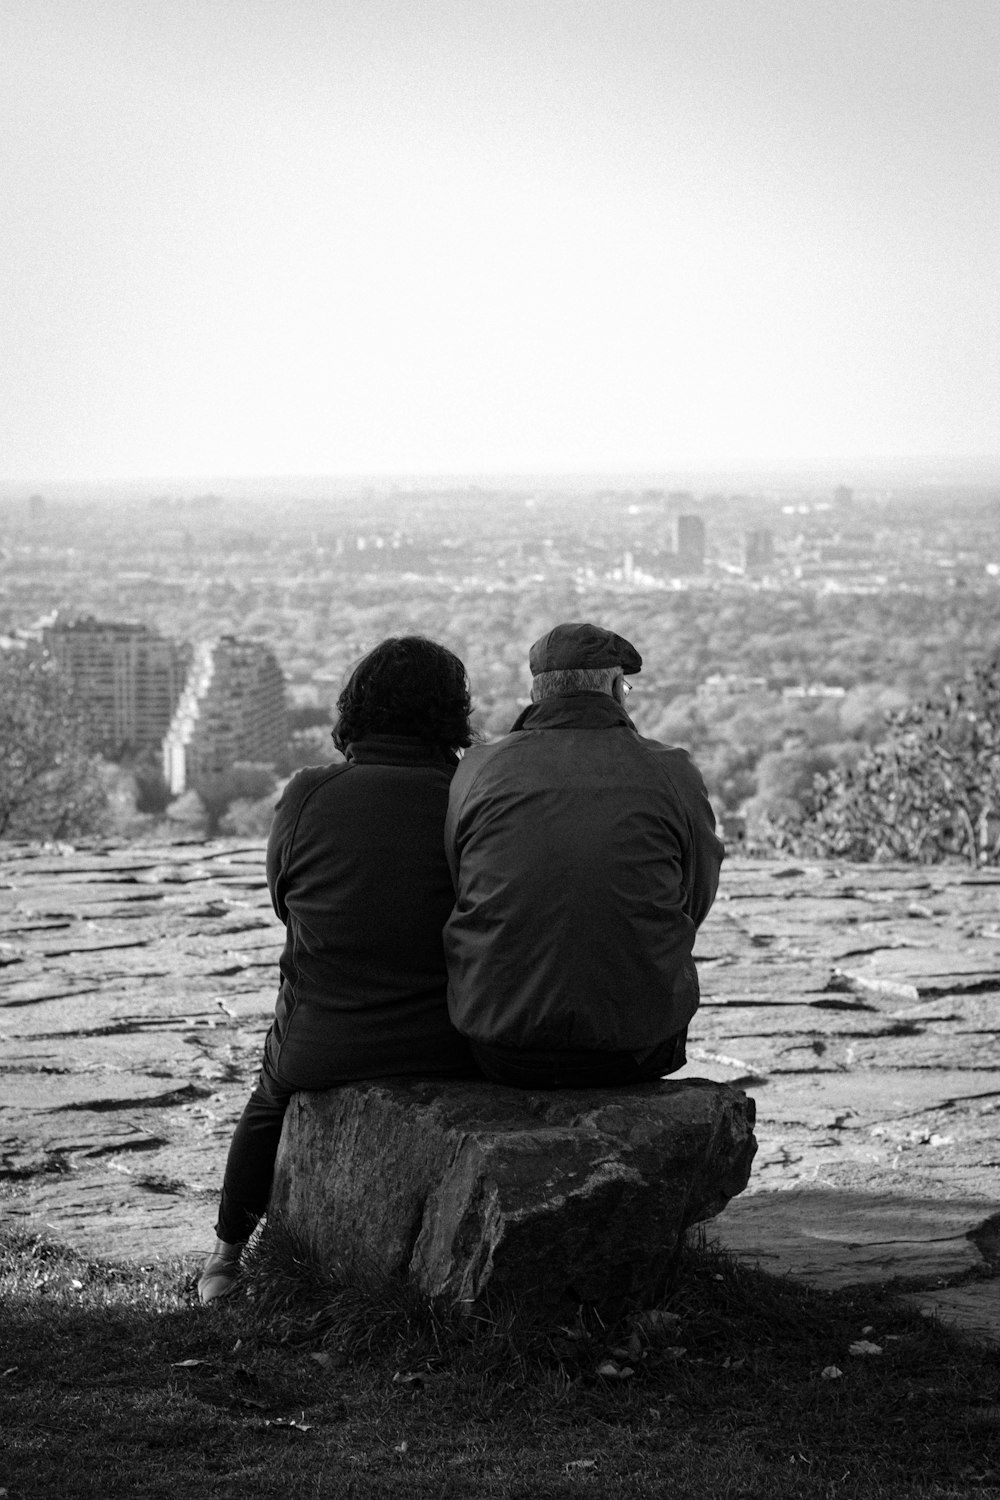 un paio di persone sedute sulla cima di una roccia